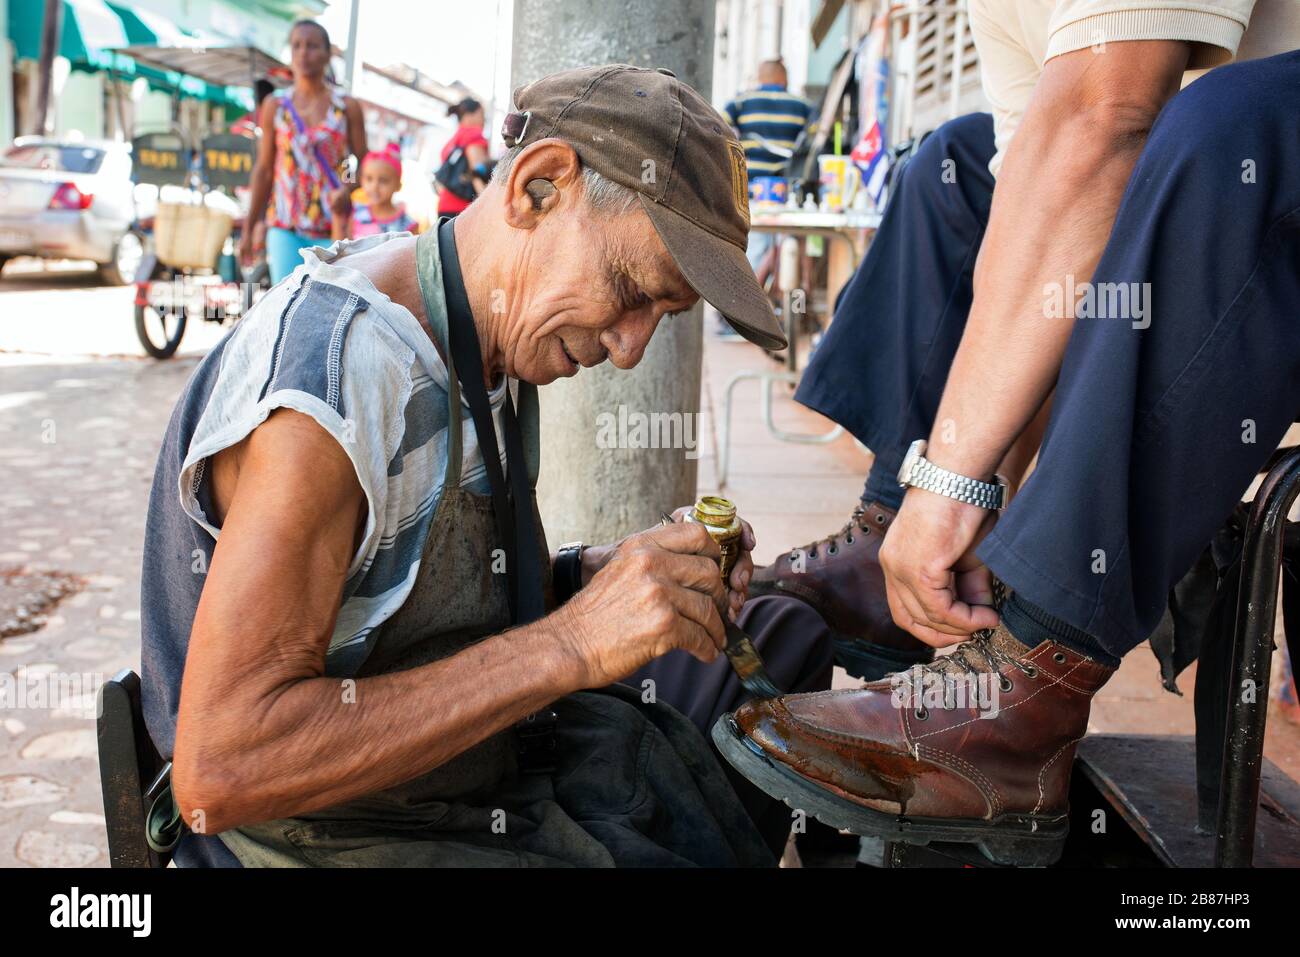 Lustrascarpe da strada. Uomo con una moneta nell'orecchio fotografato mentre pulisce le scarpe di un cliente. Foto Stock